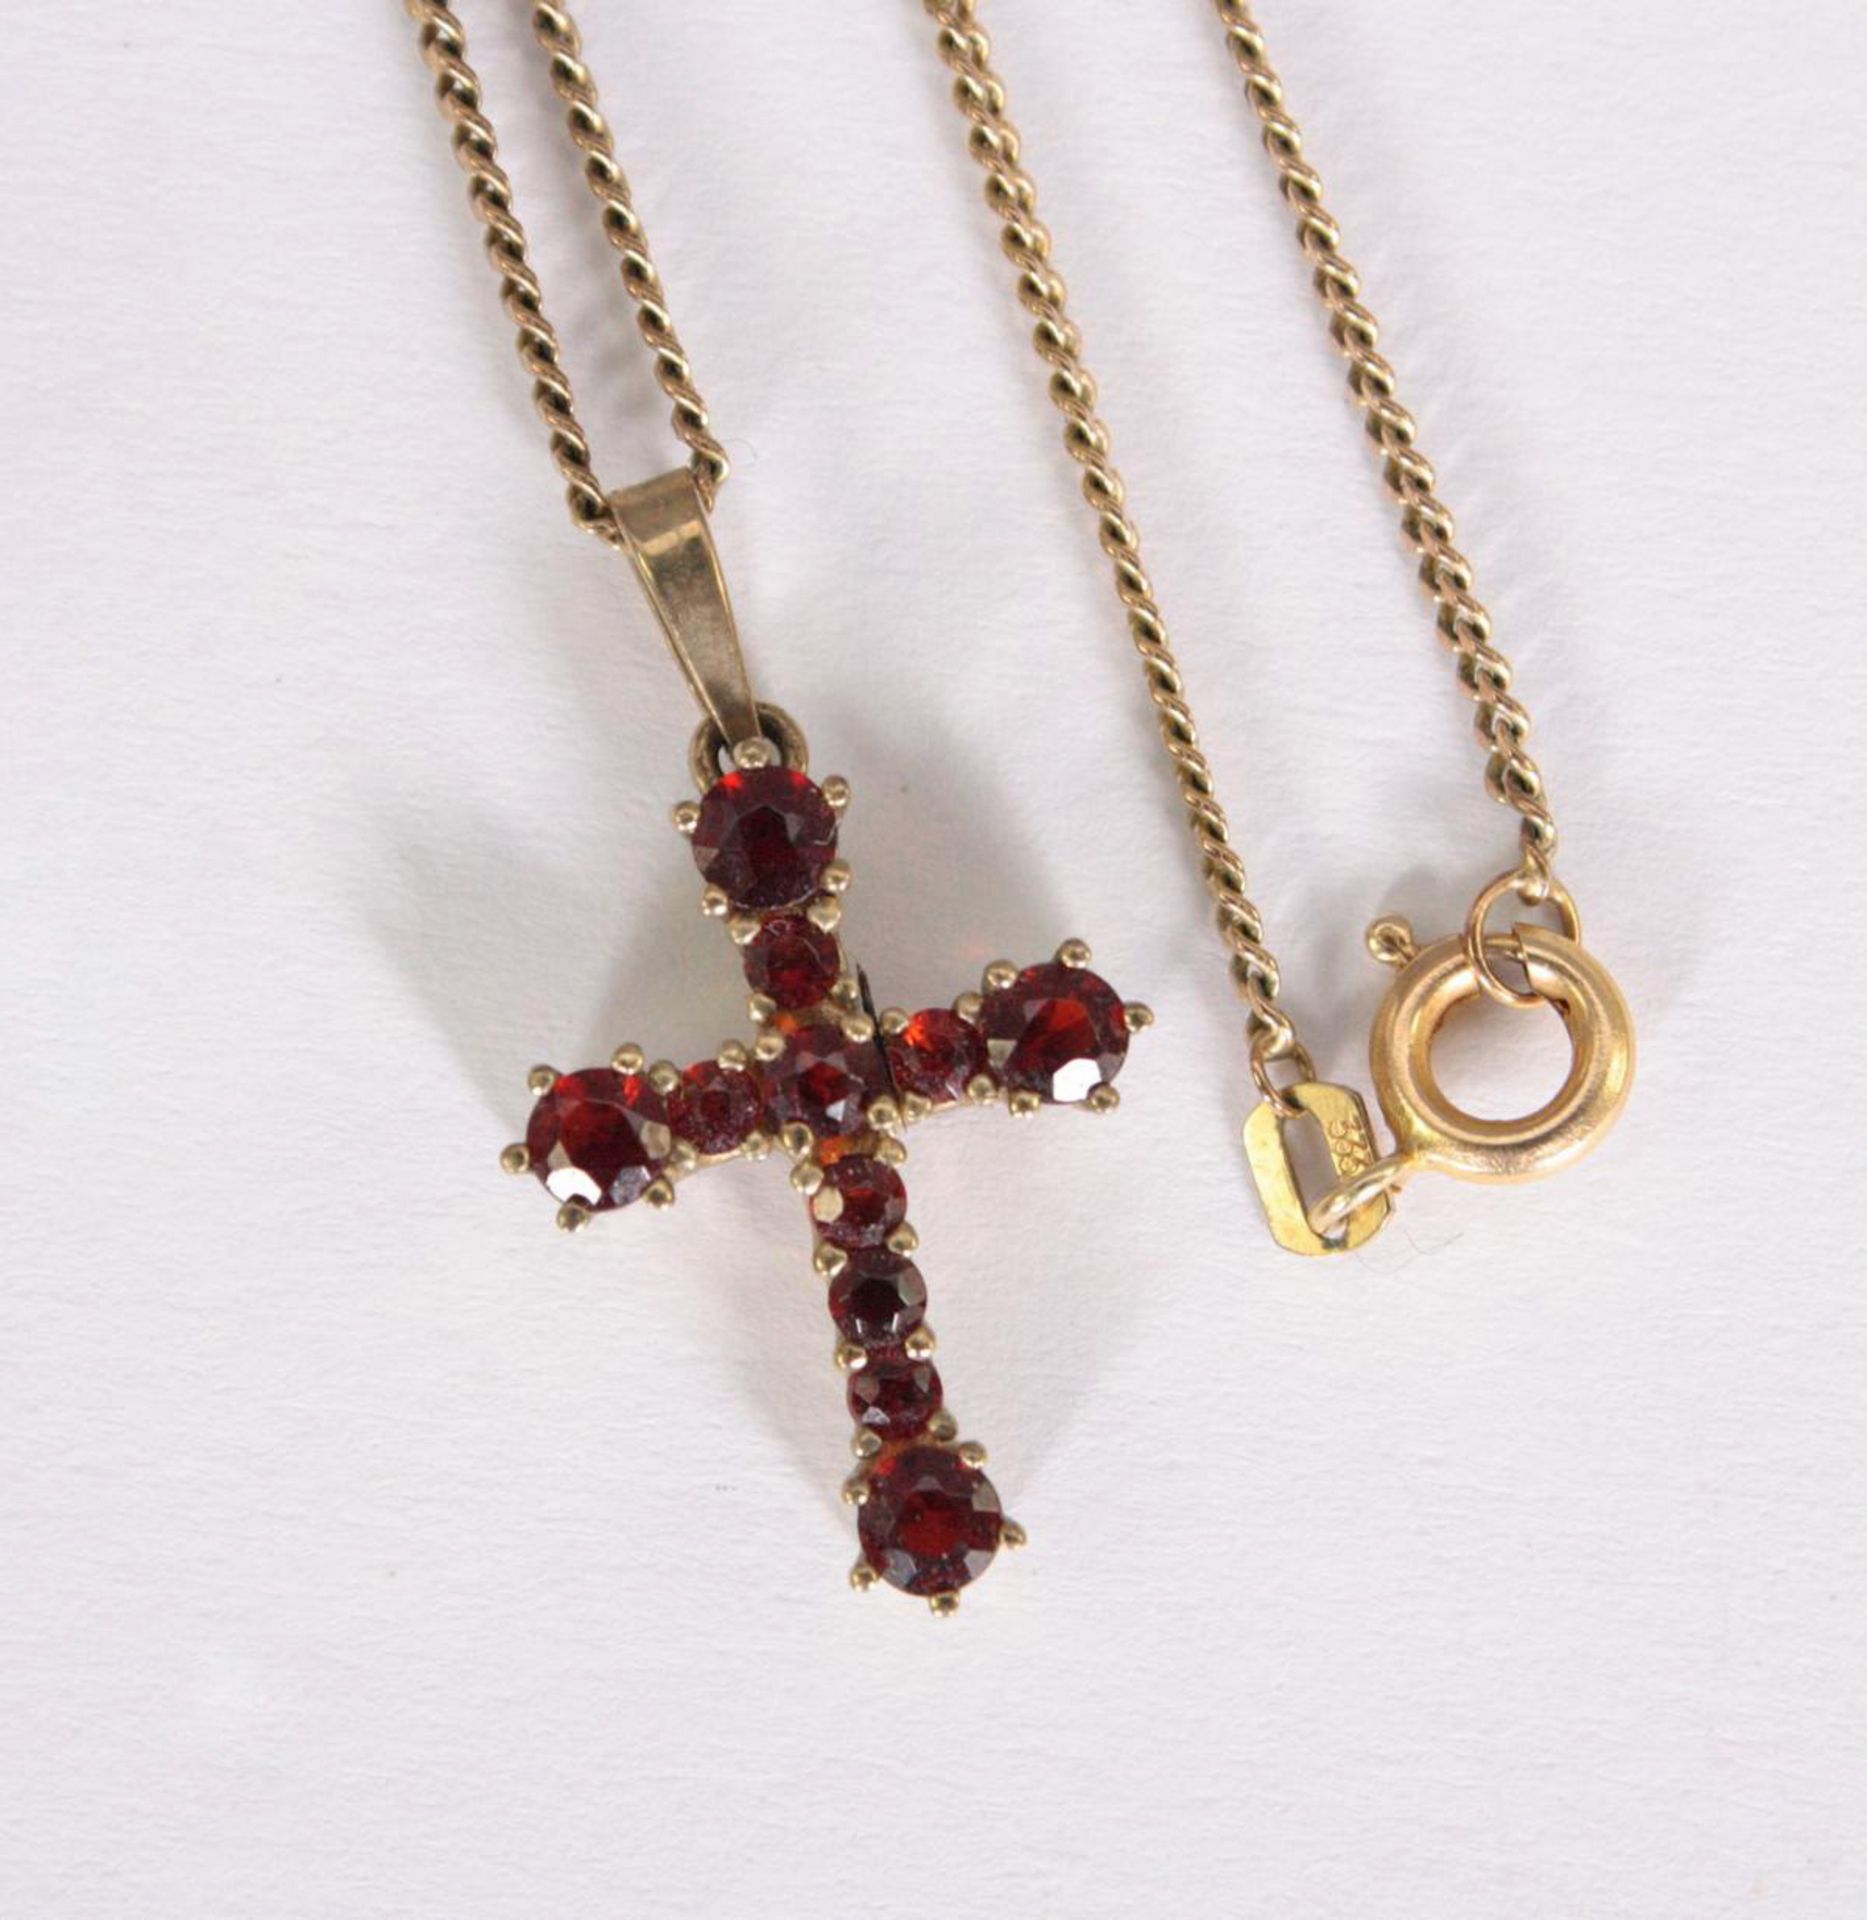 Halskette mit Kreuzanhänger, 8 Karat Gelbgold - Bild 3 aus 4